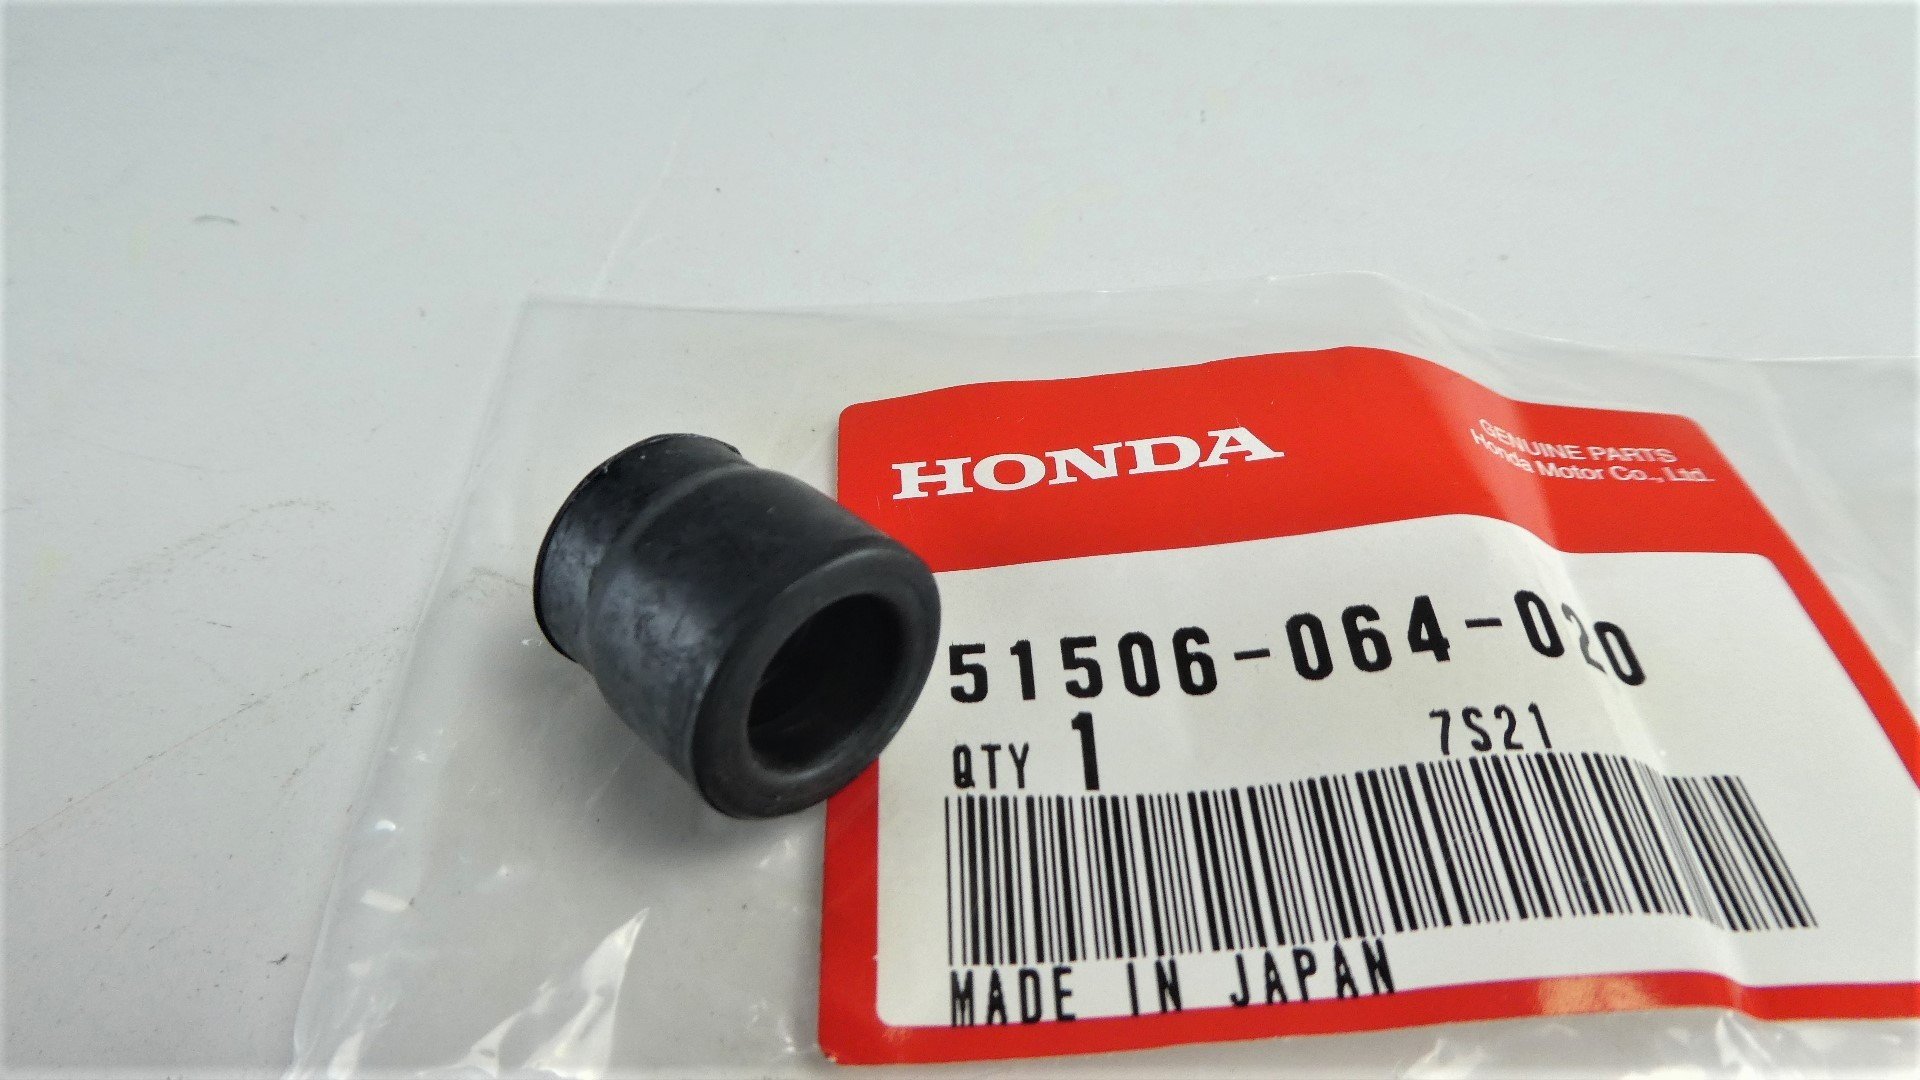 Gabelrohre Gabeleinsätze für Honda Monkey Z50 6 Volt Hochwertig